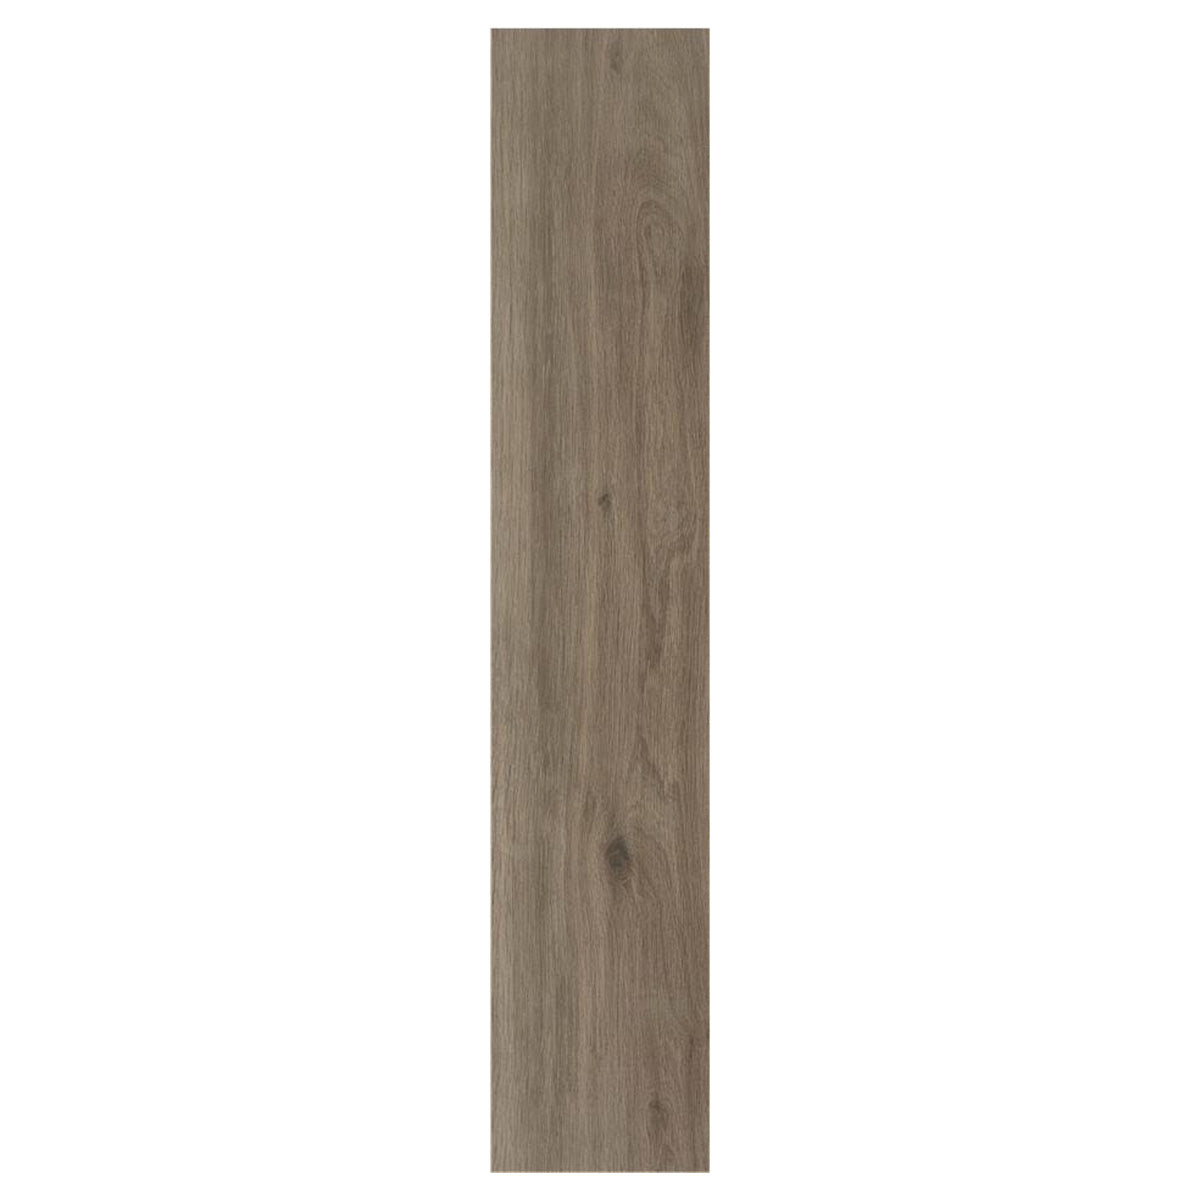 Versat Nogal Wood Effect Tile 23x120cm matt